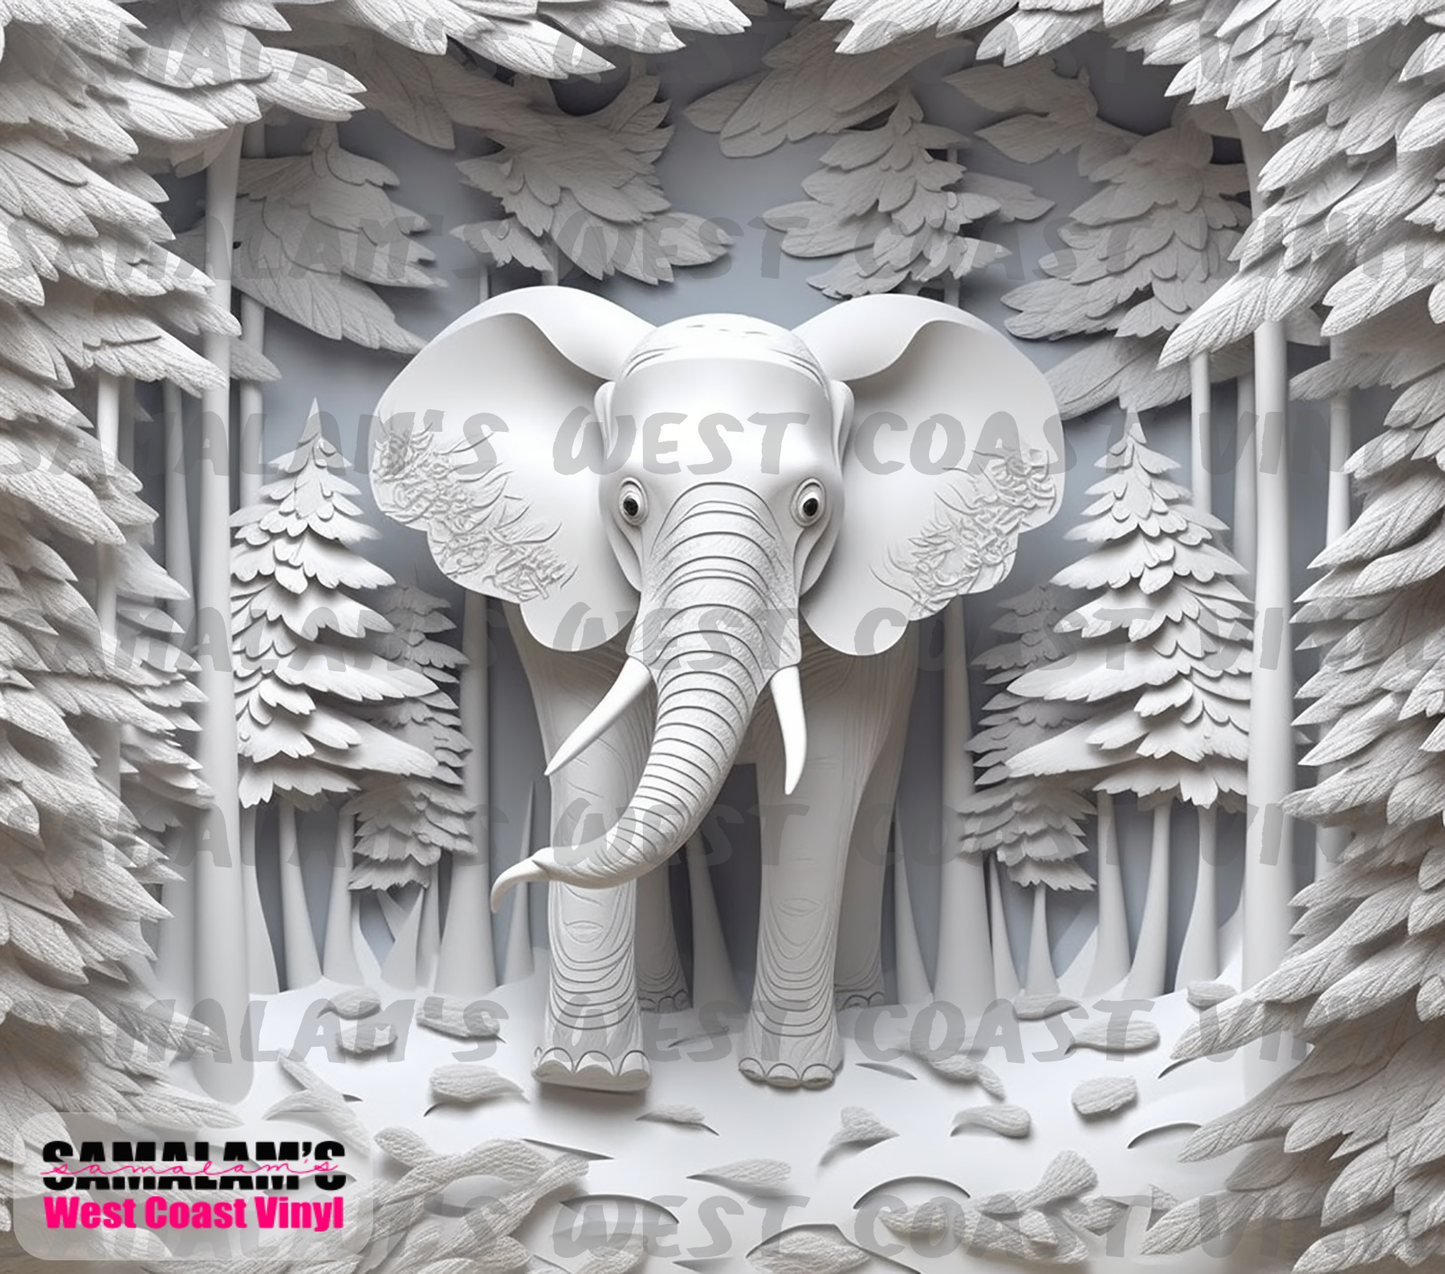 Elephant - 3D - 1 - Tumbler Wrap